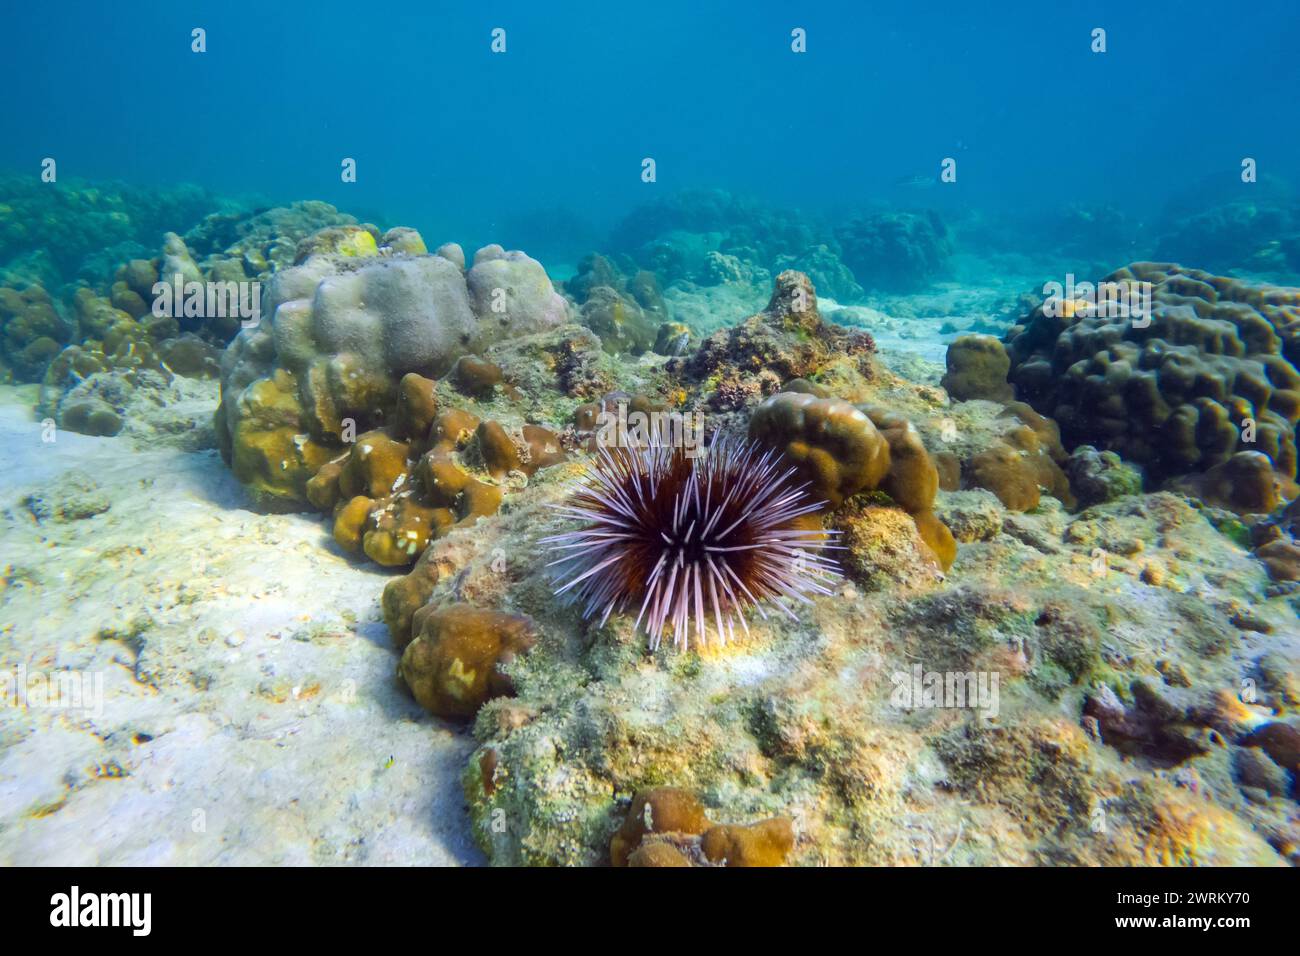 Plusieurs oursins de mer avec des épines blanches et noires déplacent leurs épines fusionnant en morceaux au fond des eaux chaudes tropicales d'un récif corallien. Banque D'Images